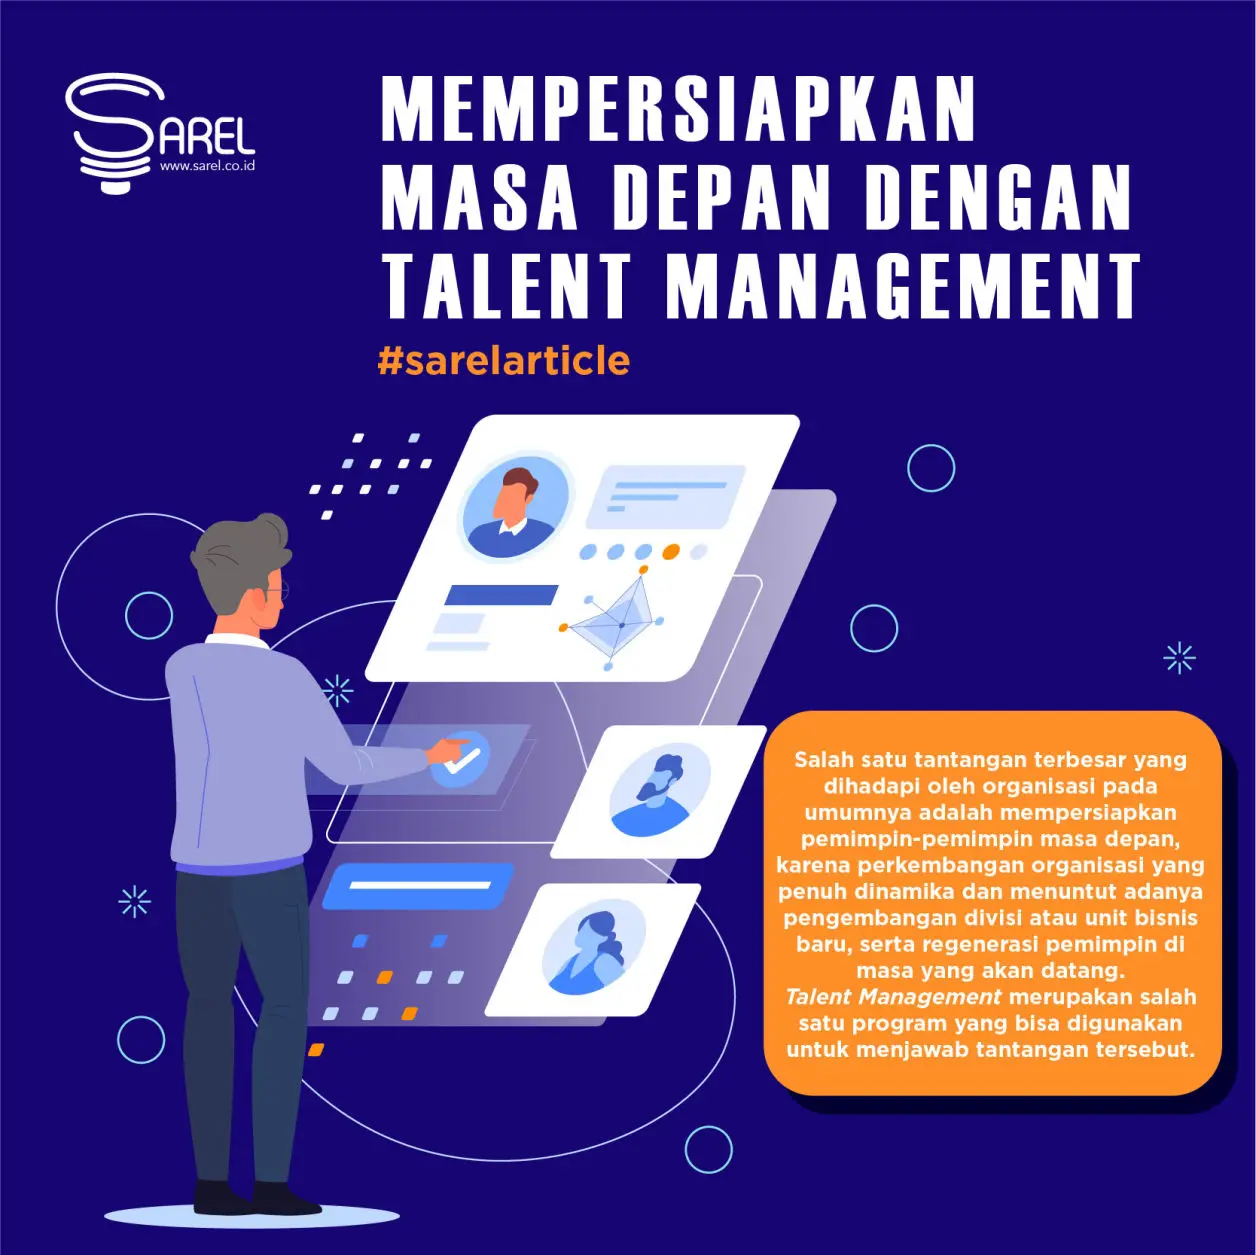 Mempersiapkan Masa Depan dengan Talent Management